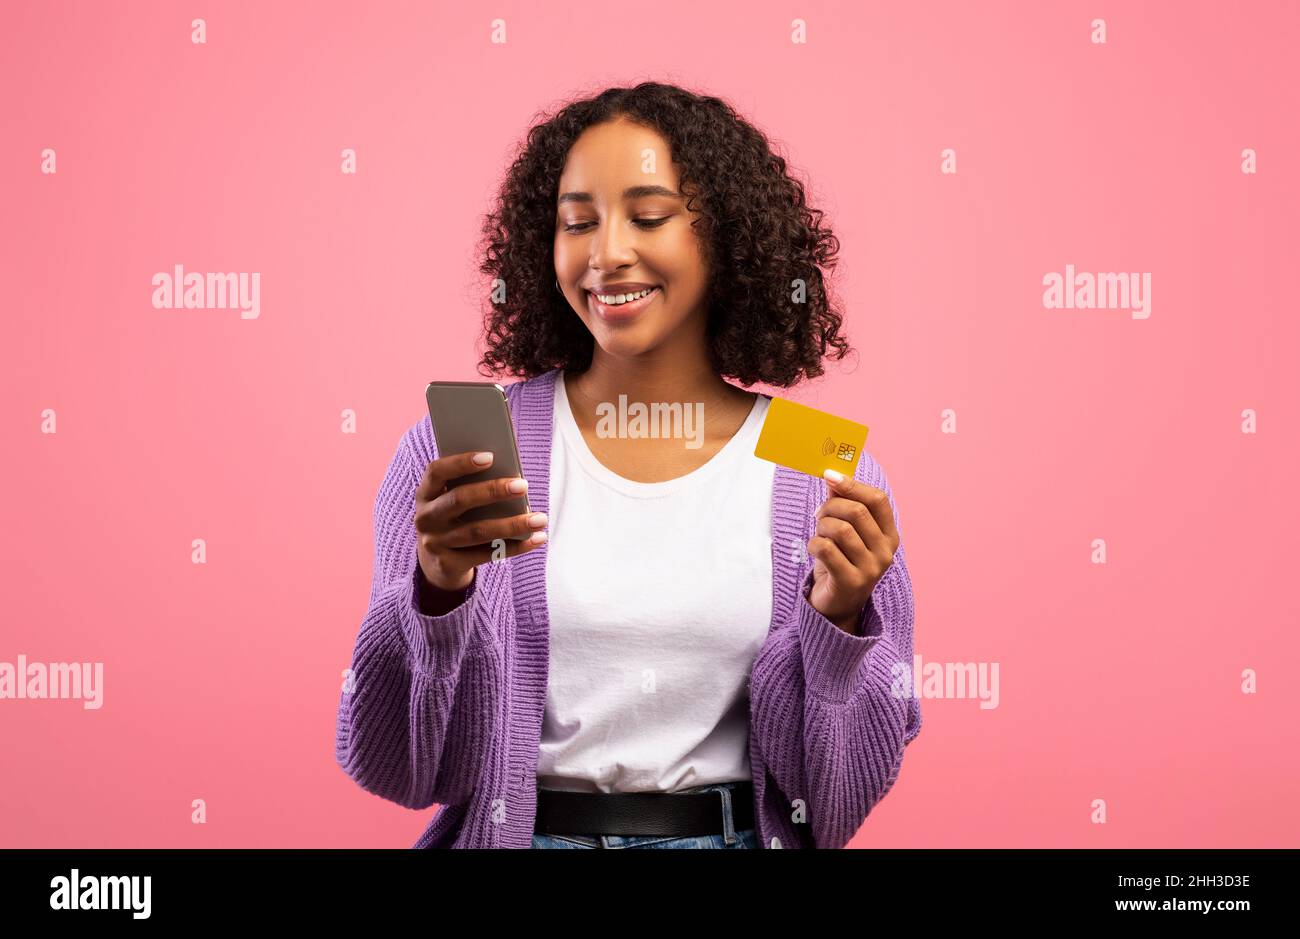 Nouvelle application d'achat en ligne.Charmante femme noire utilisant un smartphone et une carte de crédit, achetant des biens dans la boutique Internet Banque D'Images